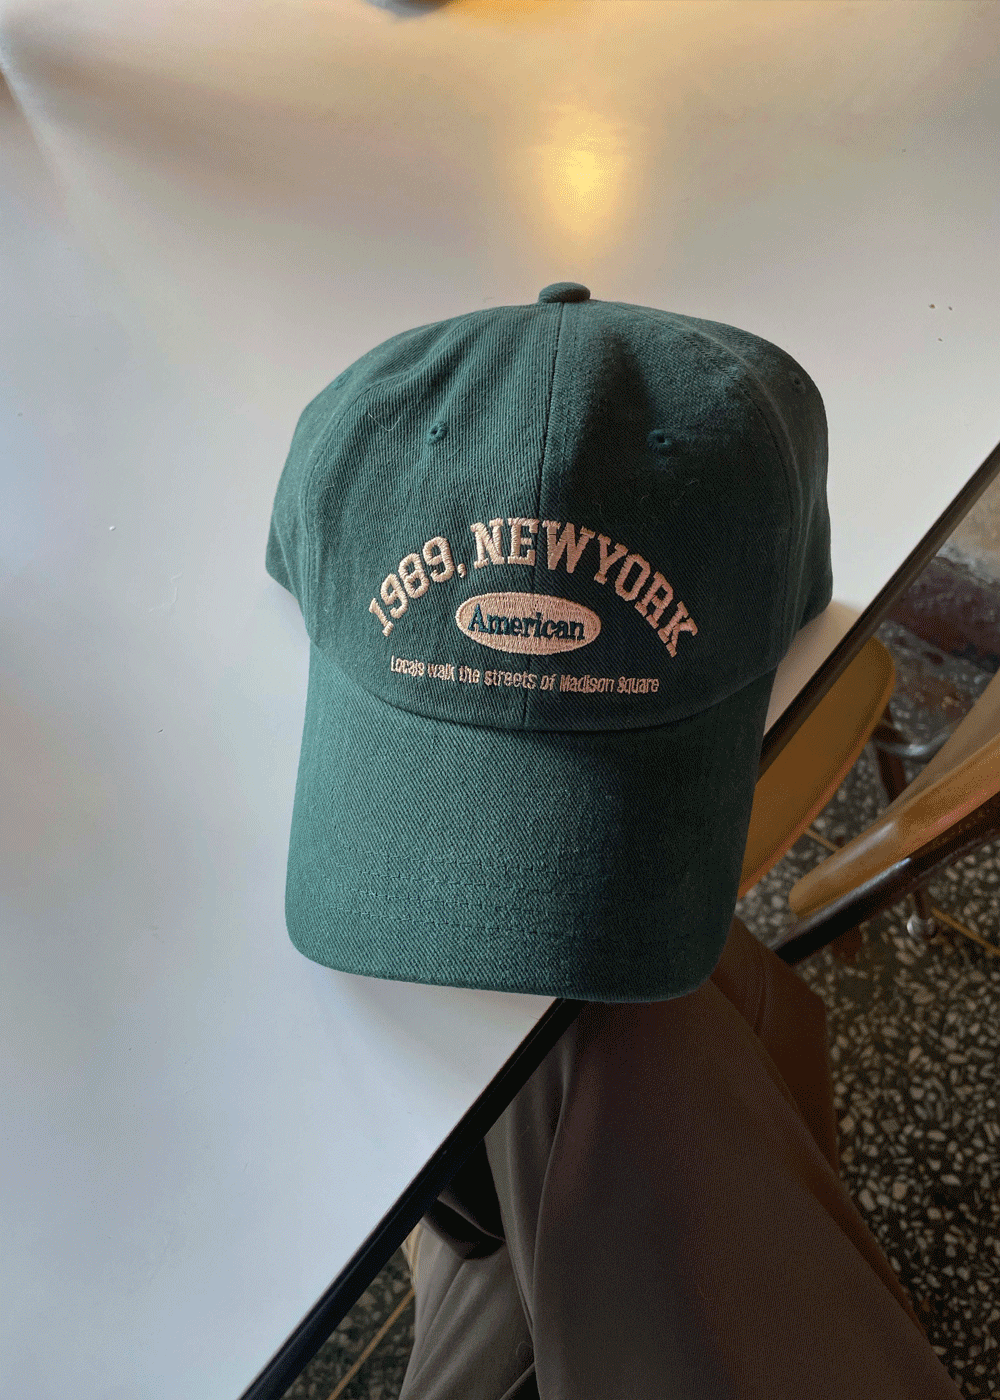 New york ballcap